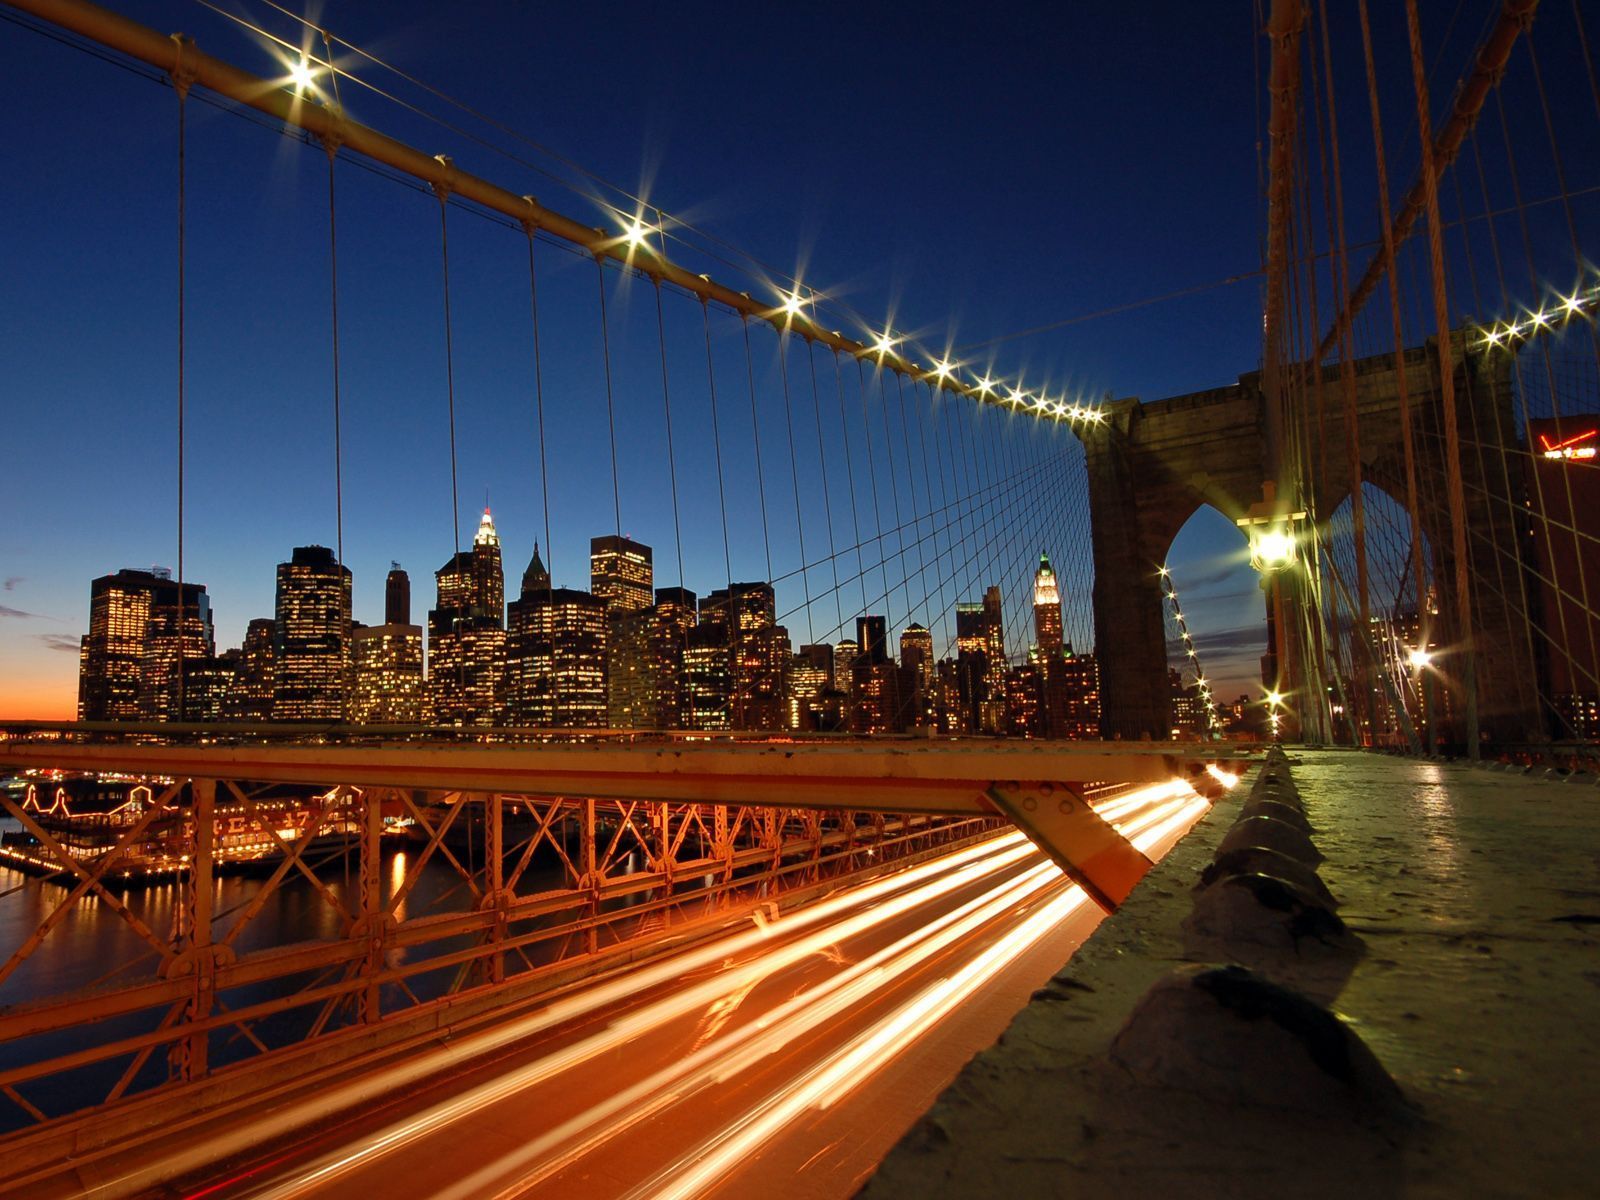 Wallpapers Bridges Night Street lights Cities Image Download